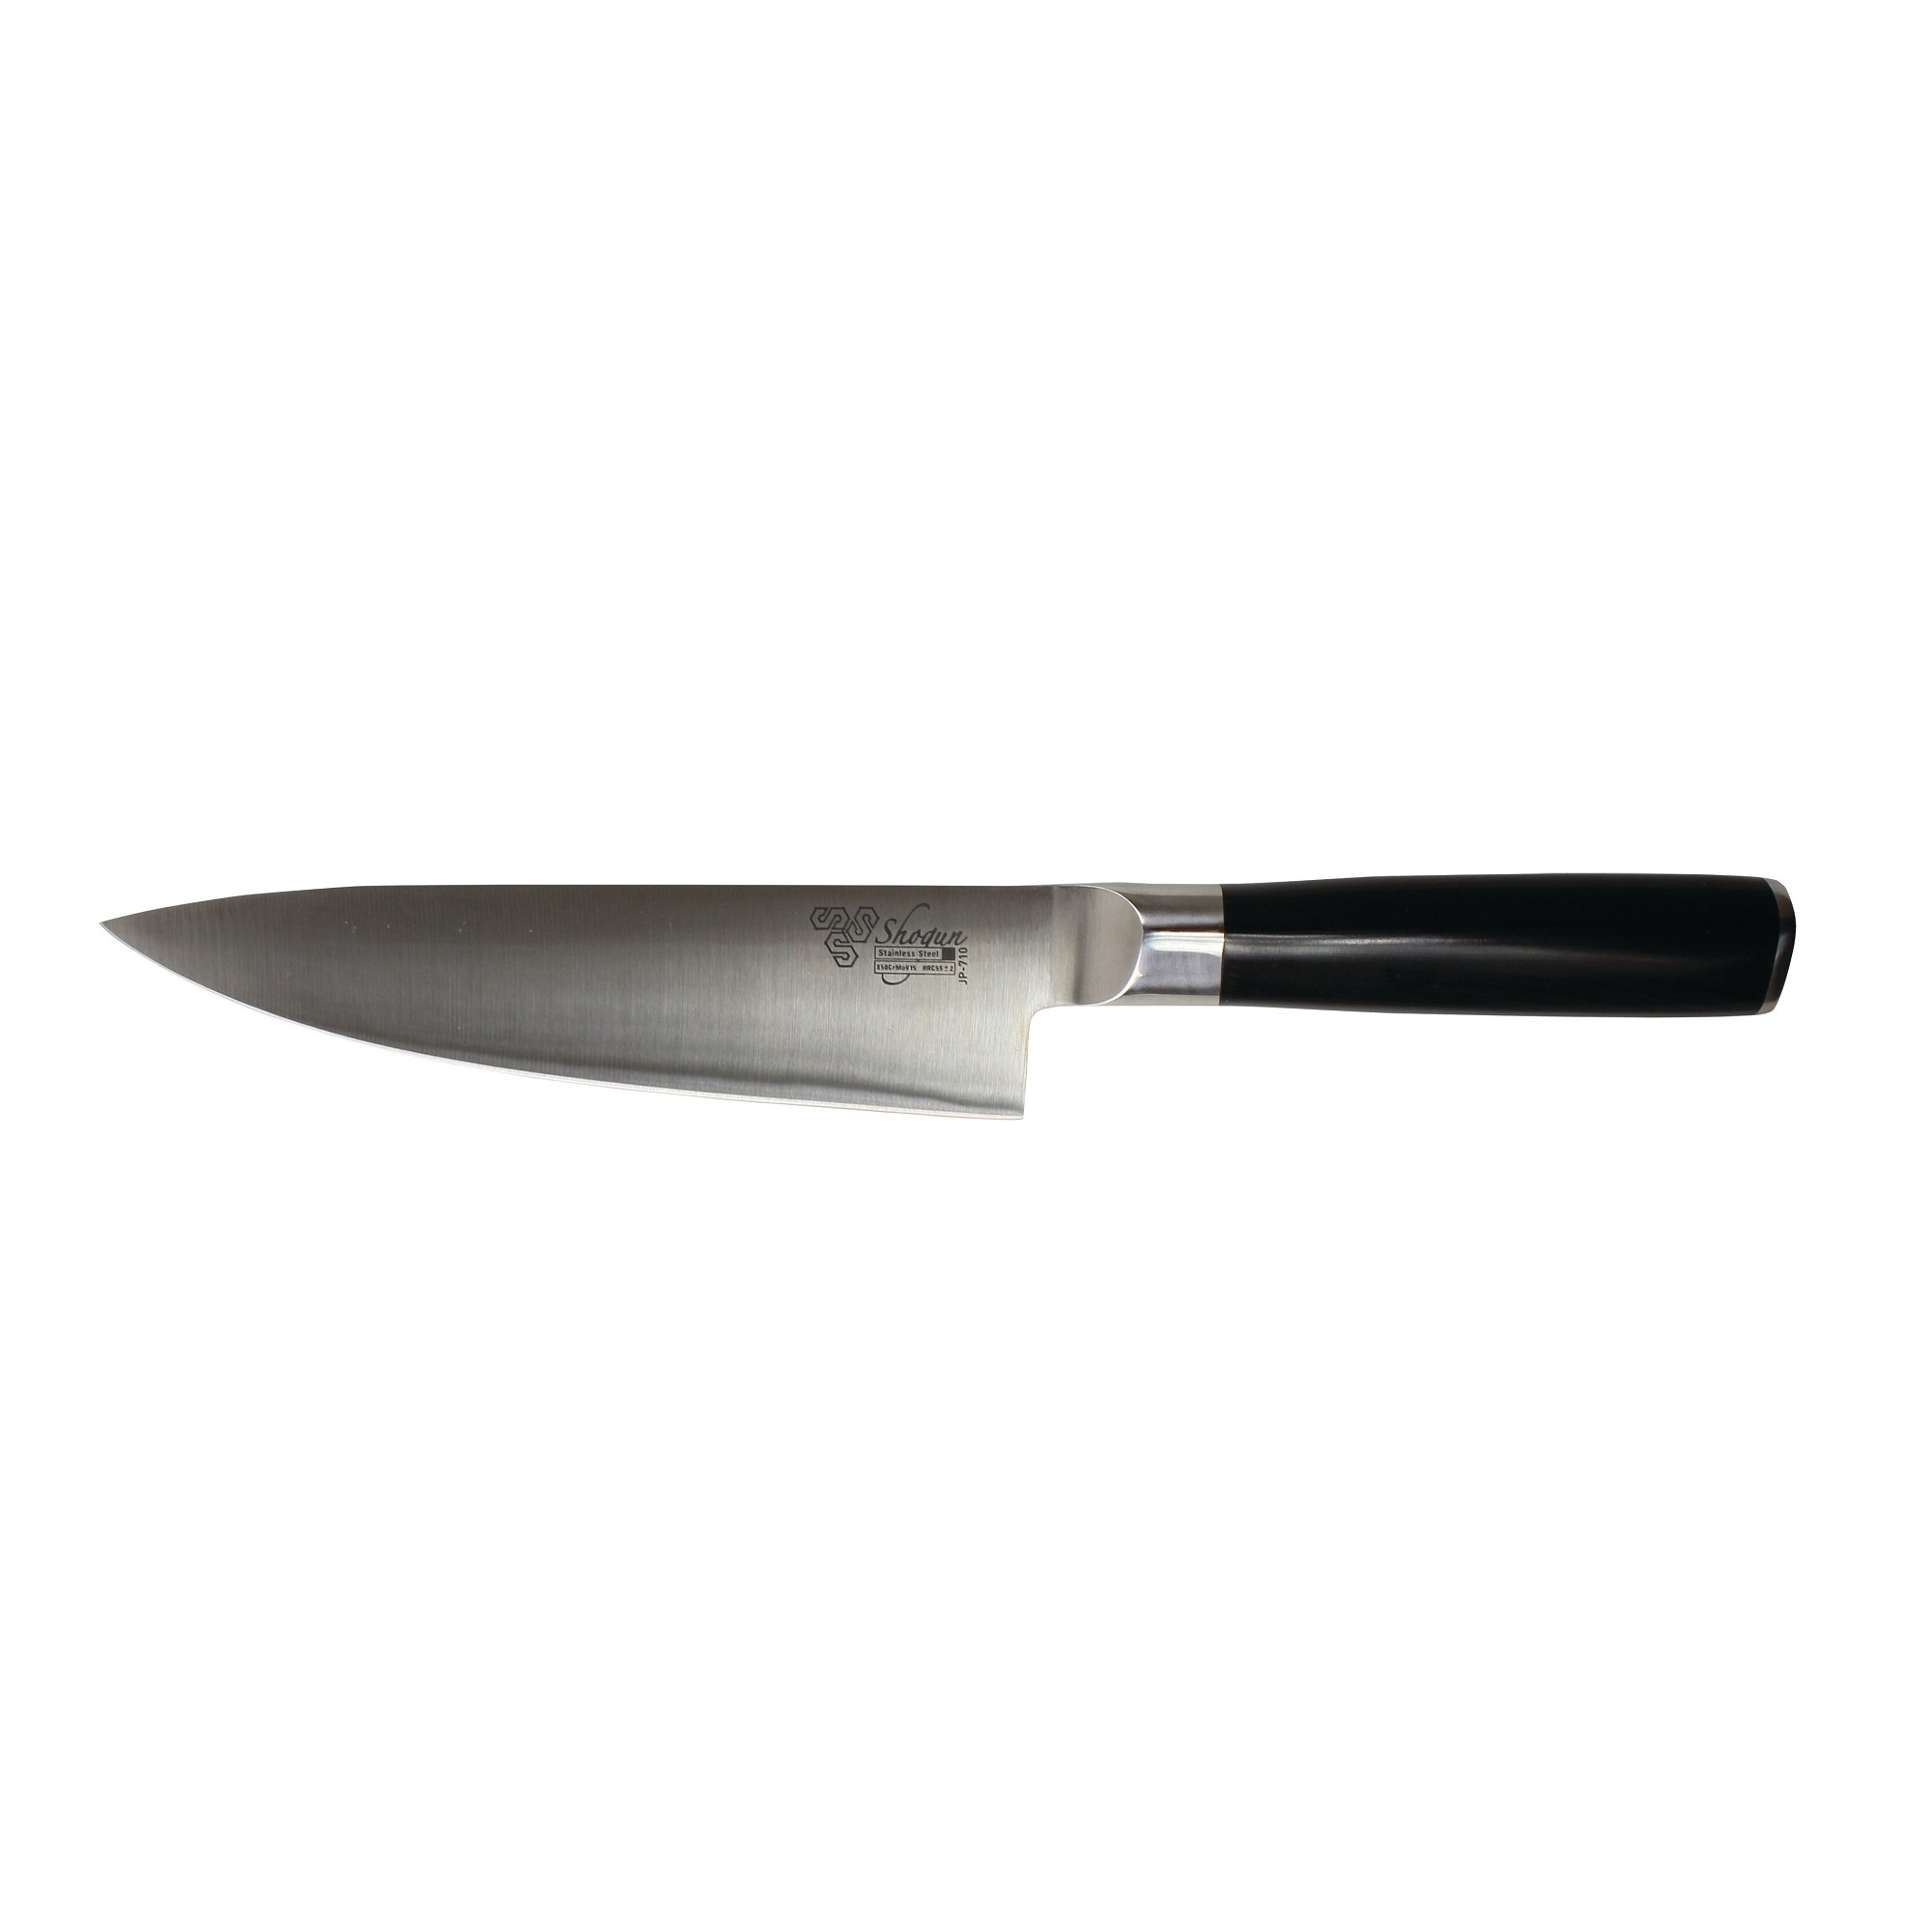 Нож повара Shogun 8" широкий, Англия